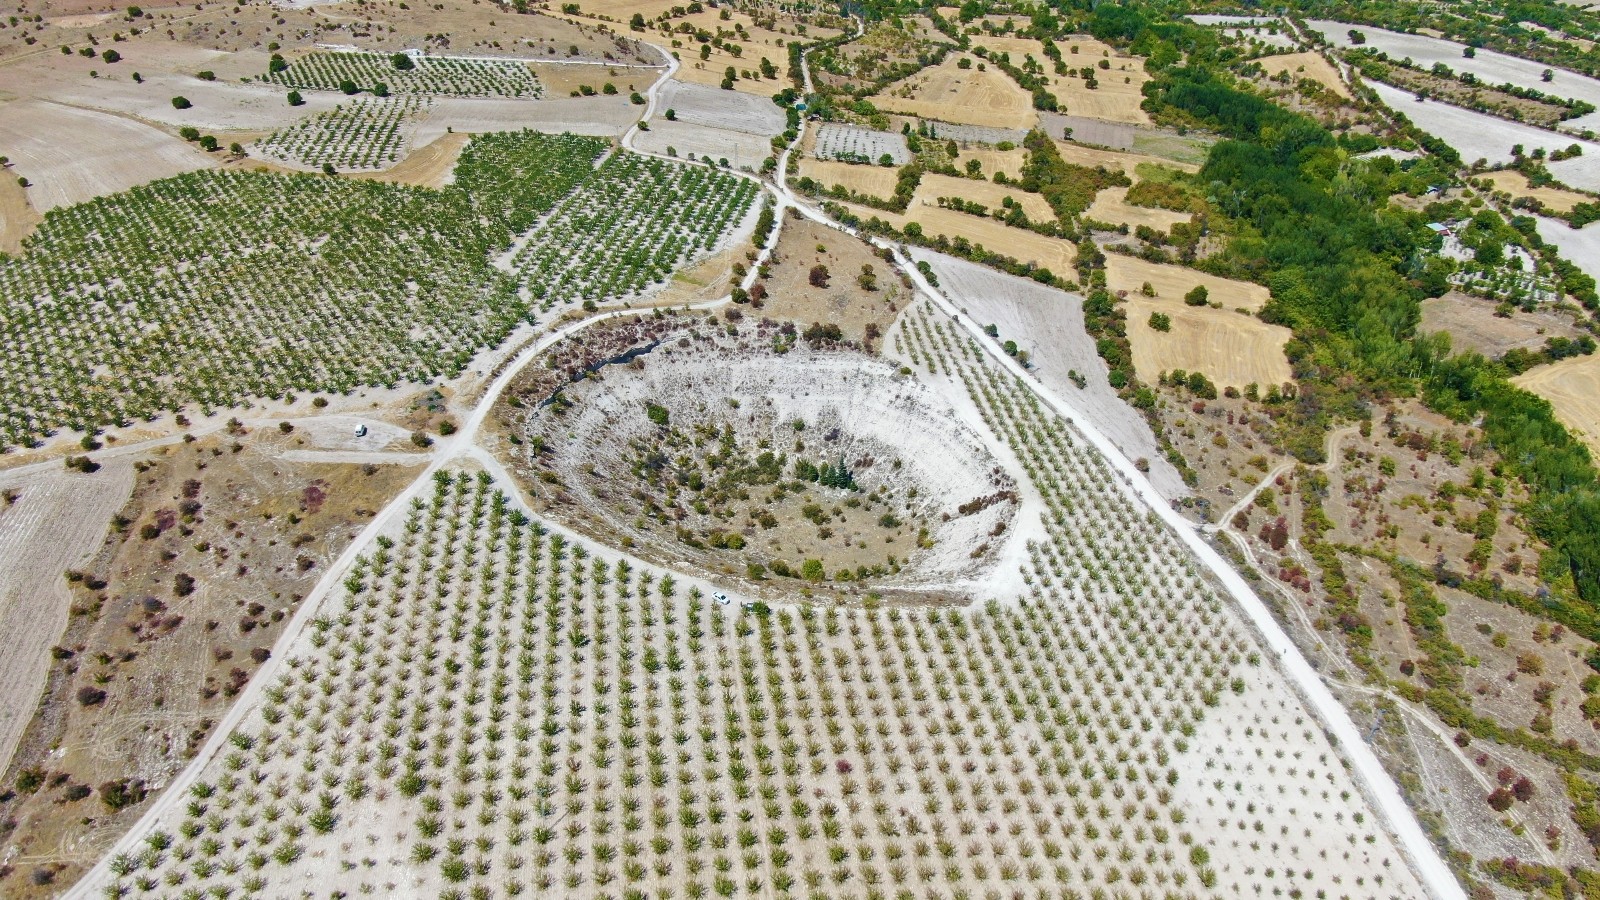 Elazığ’da bulunan ’Kup çukurunun’ turizme kazandırılması isteniyor